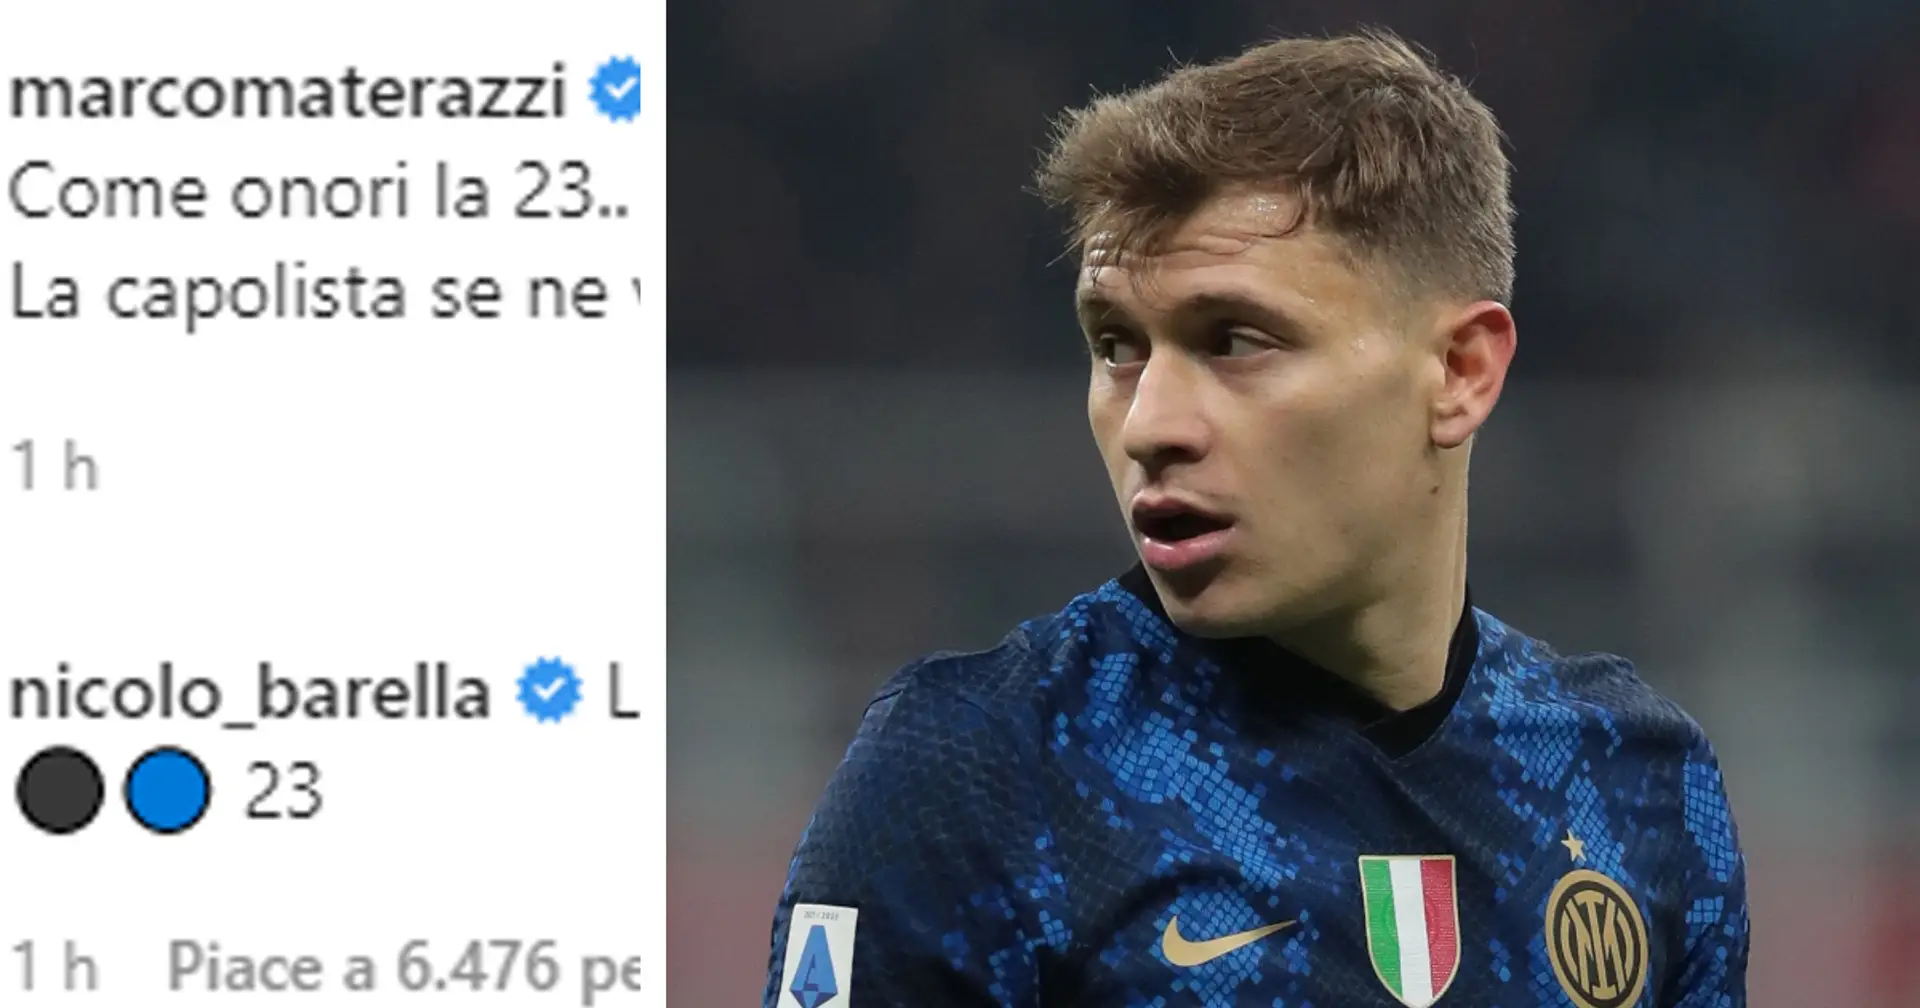 "Onori il numero 23!": il botta e risposta tra Materazzi e Barella sui social fa impazzire di gioia i tifosi dell'Inter